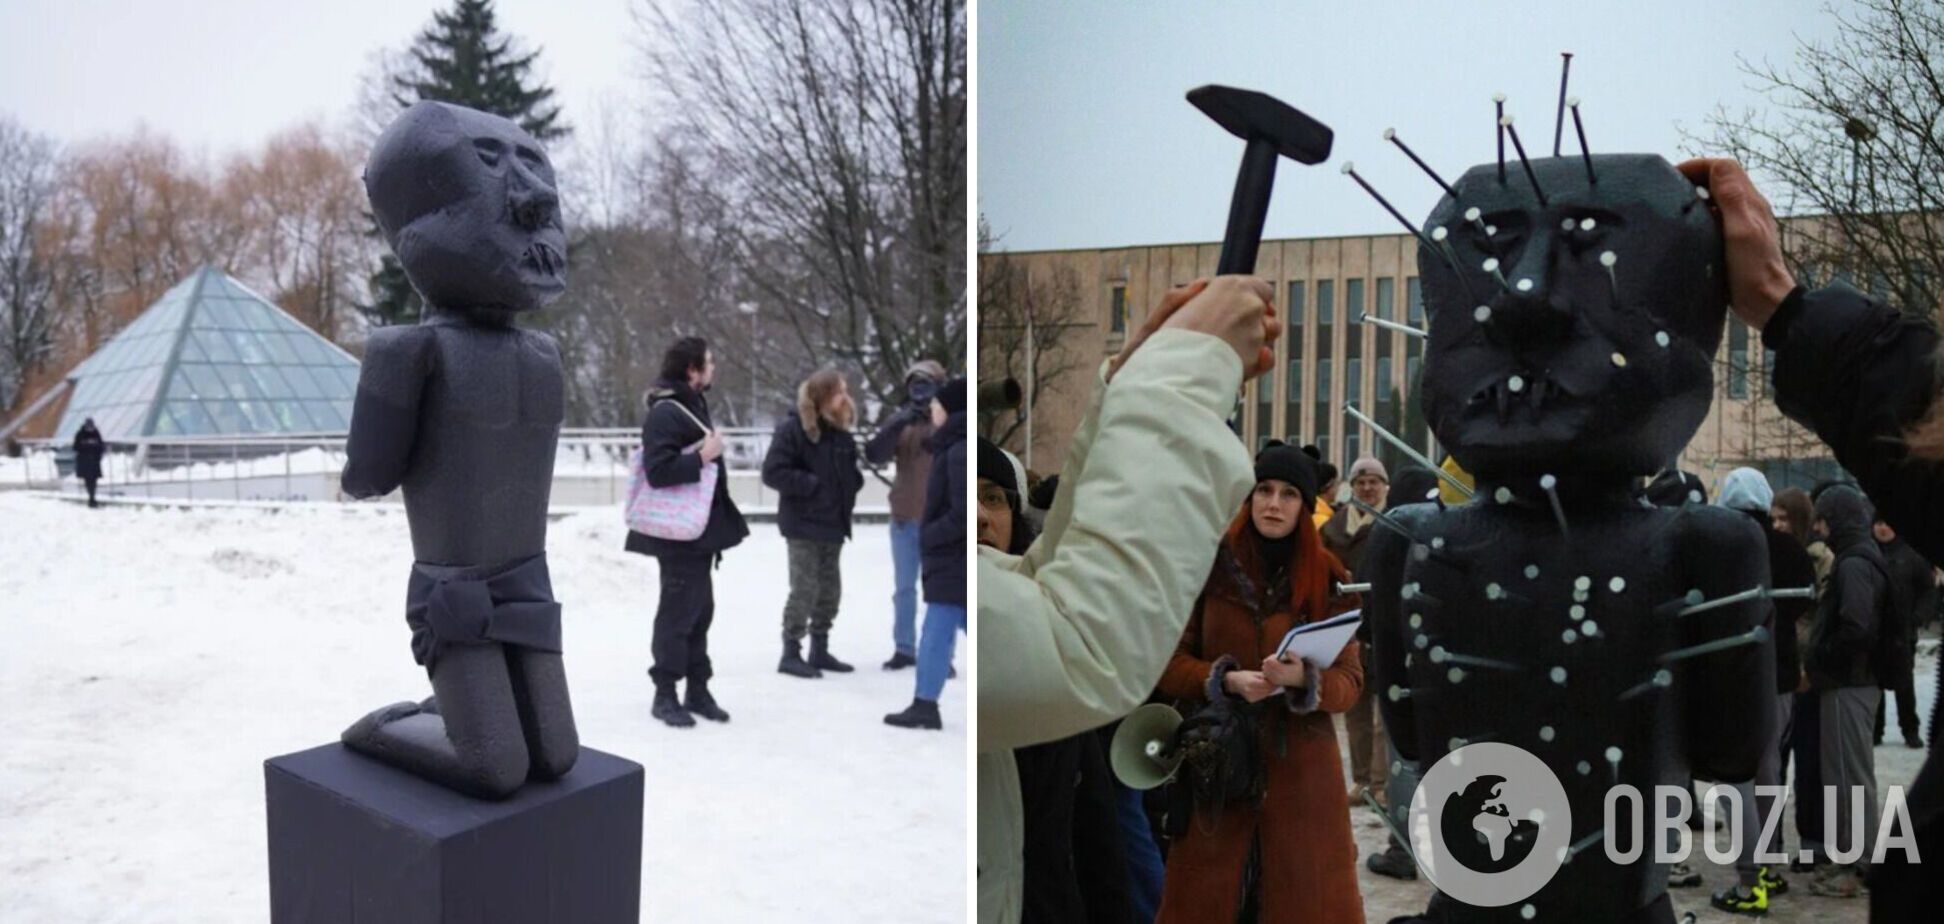 Забити цвях може кожен бажаючий: в Ризі біля посольства РФ встановили гігантську ляльку вуду у вигляді Путіна. Фото 